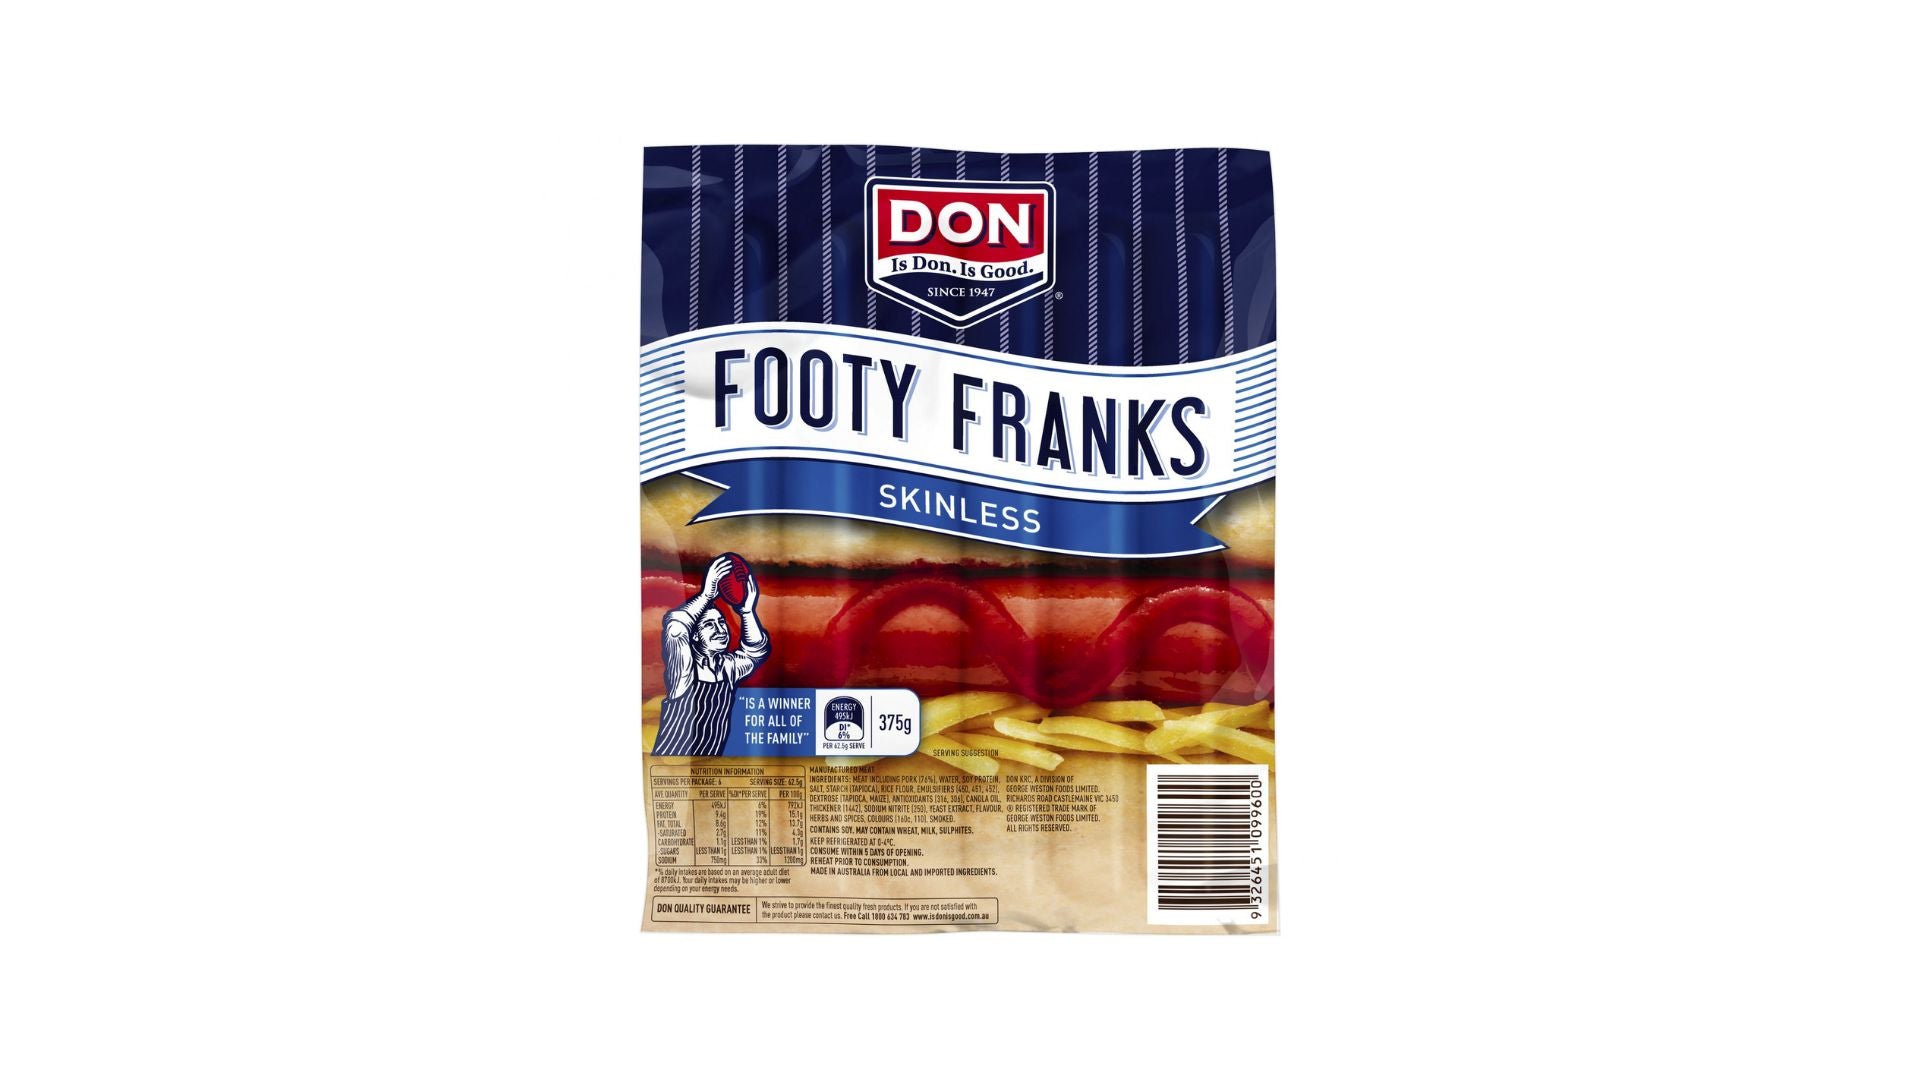 Don Skinless Footy Franks 375g